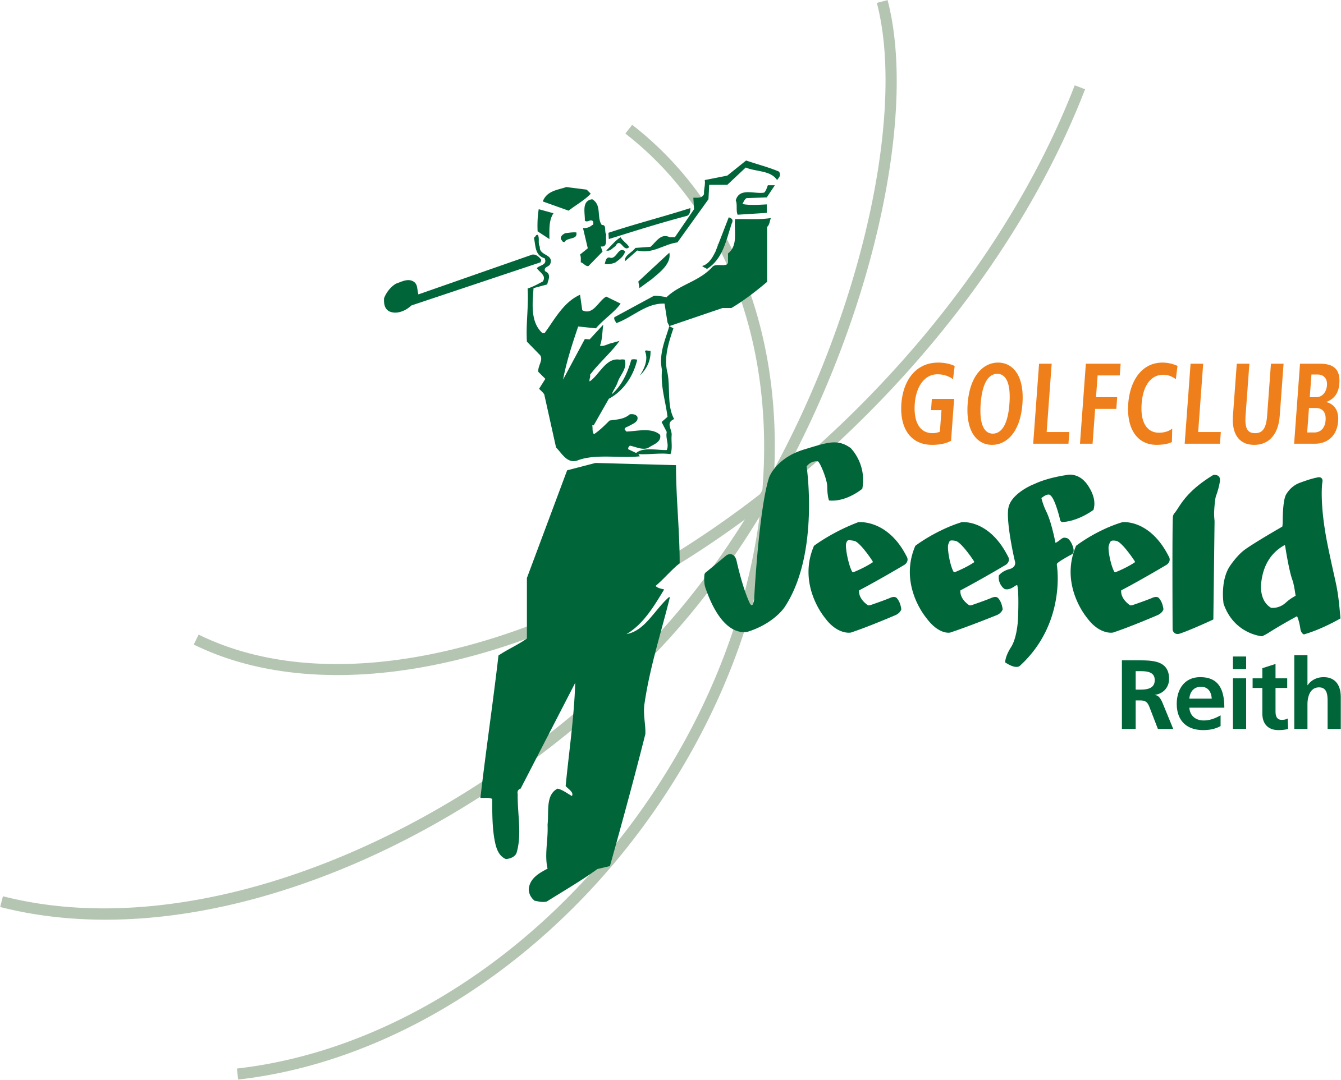 Golfclub Seefeld Reith